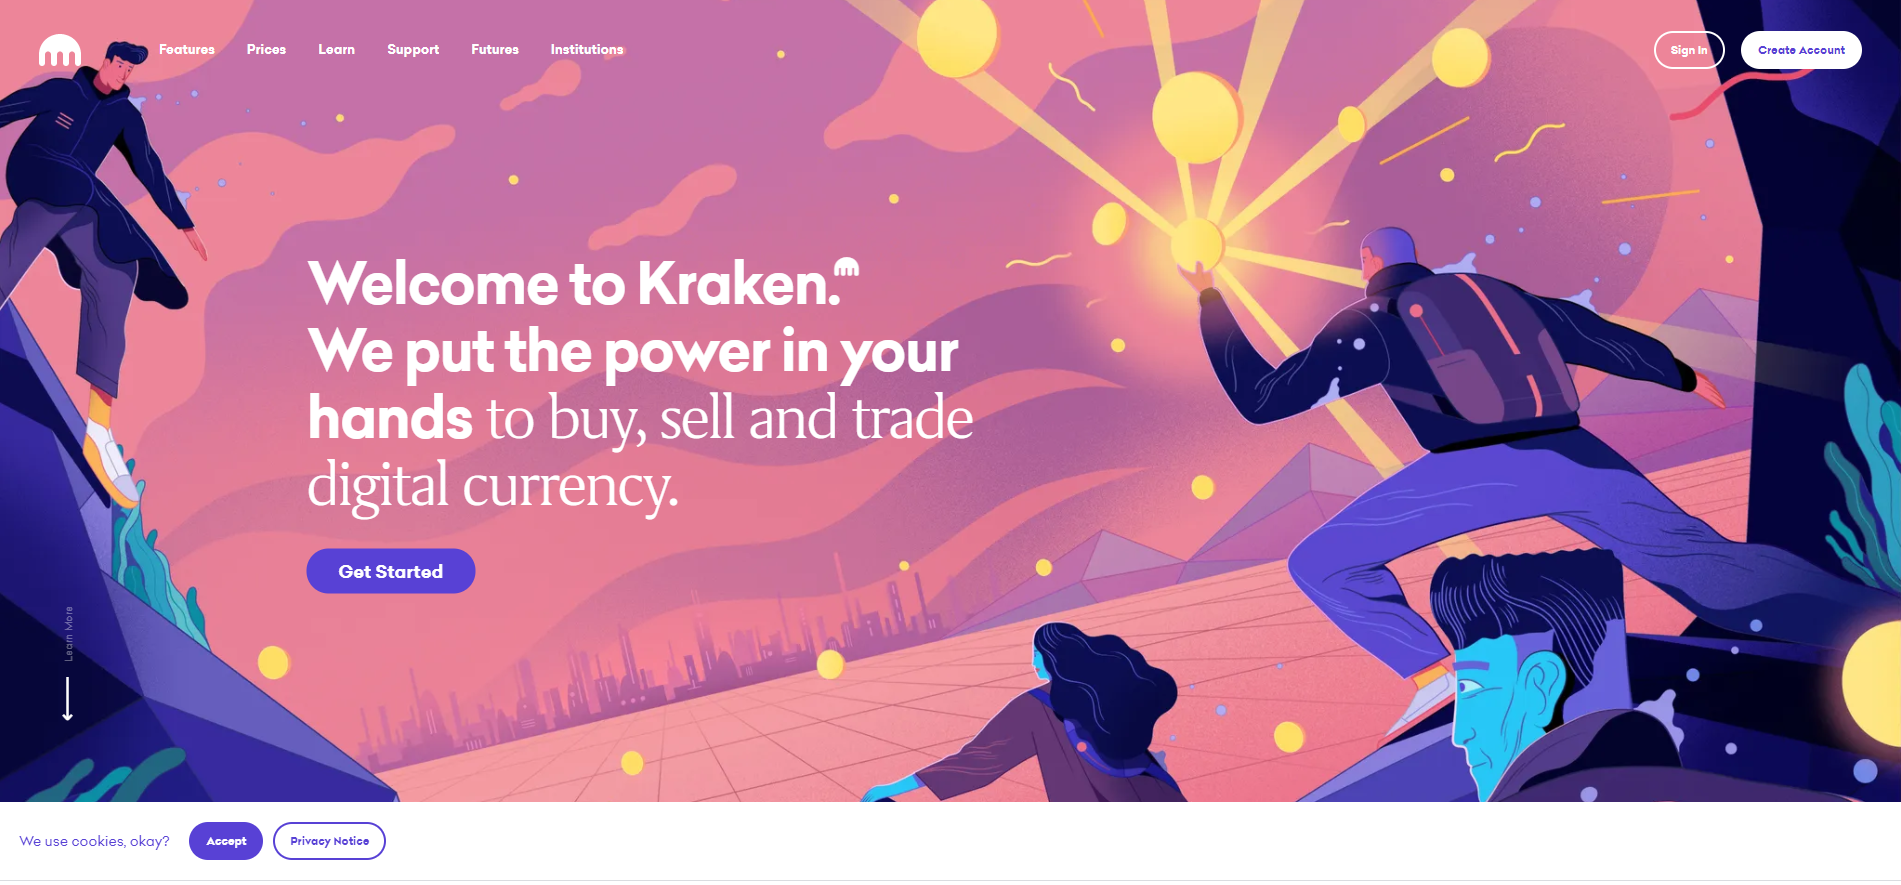 Kraken Investment : SmartAssets Investments - Bringing ...